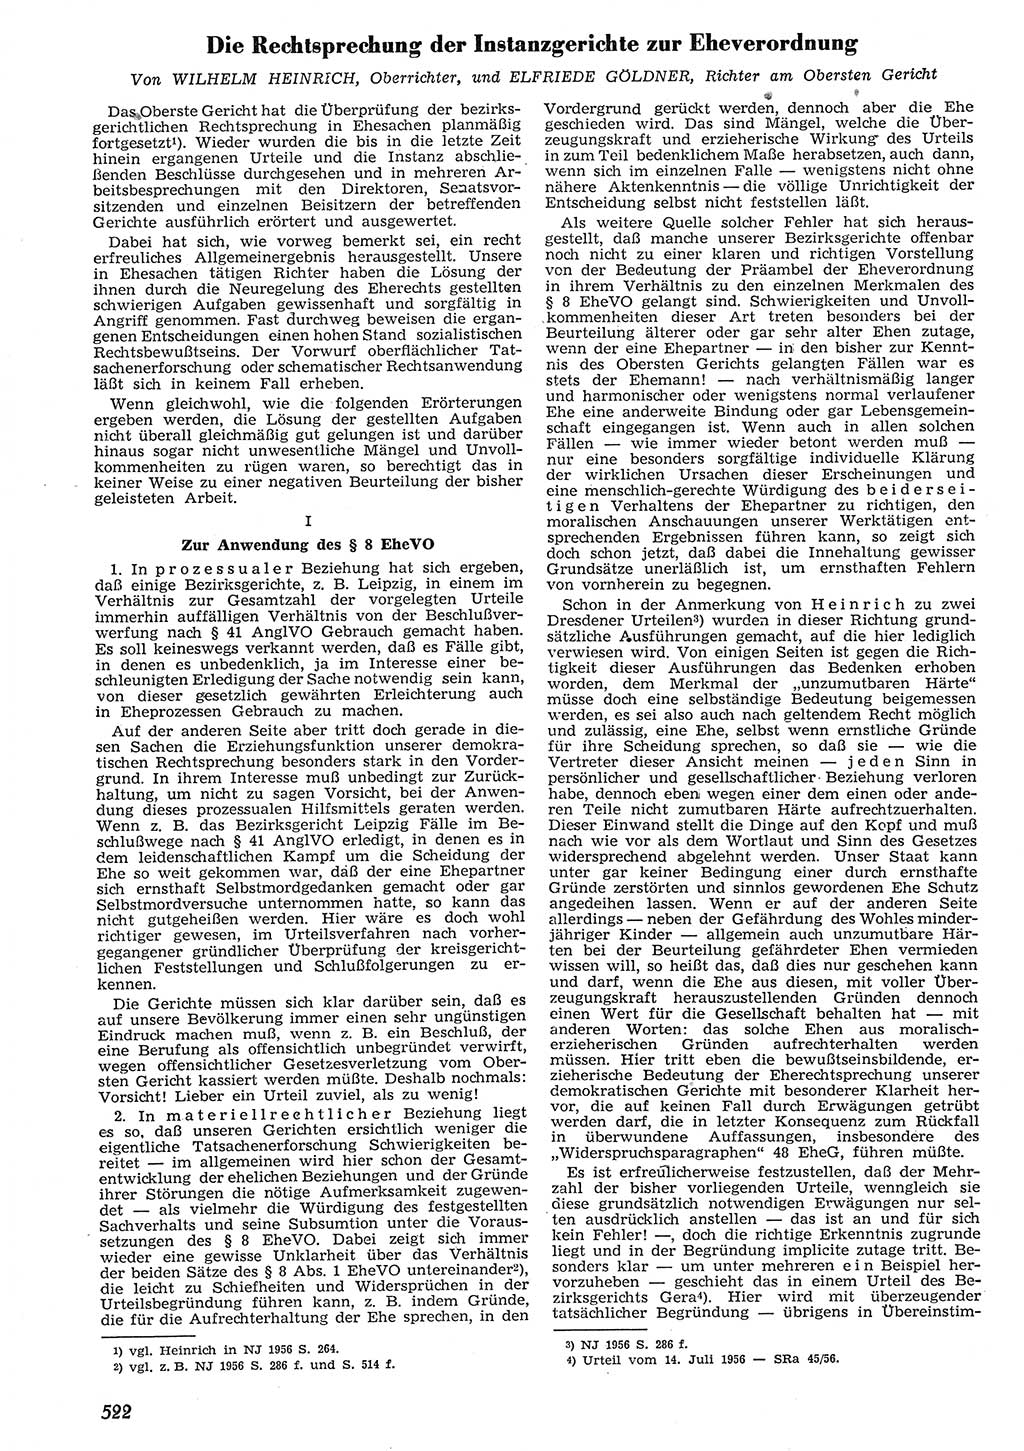 Neue Justiz (NJ), Zeitschrift für Recht und Rechtswissenschaft [Deutsche Demokratische Republik (DDR)], 10. Jahrgang 1956, Seite 522 (NJ DDR 1956, S. 522)